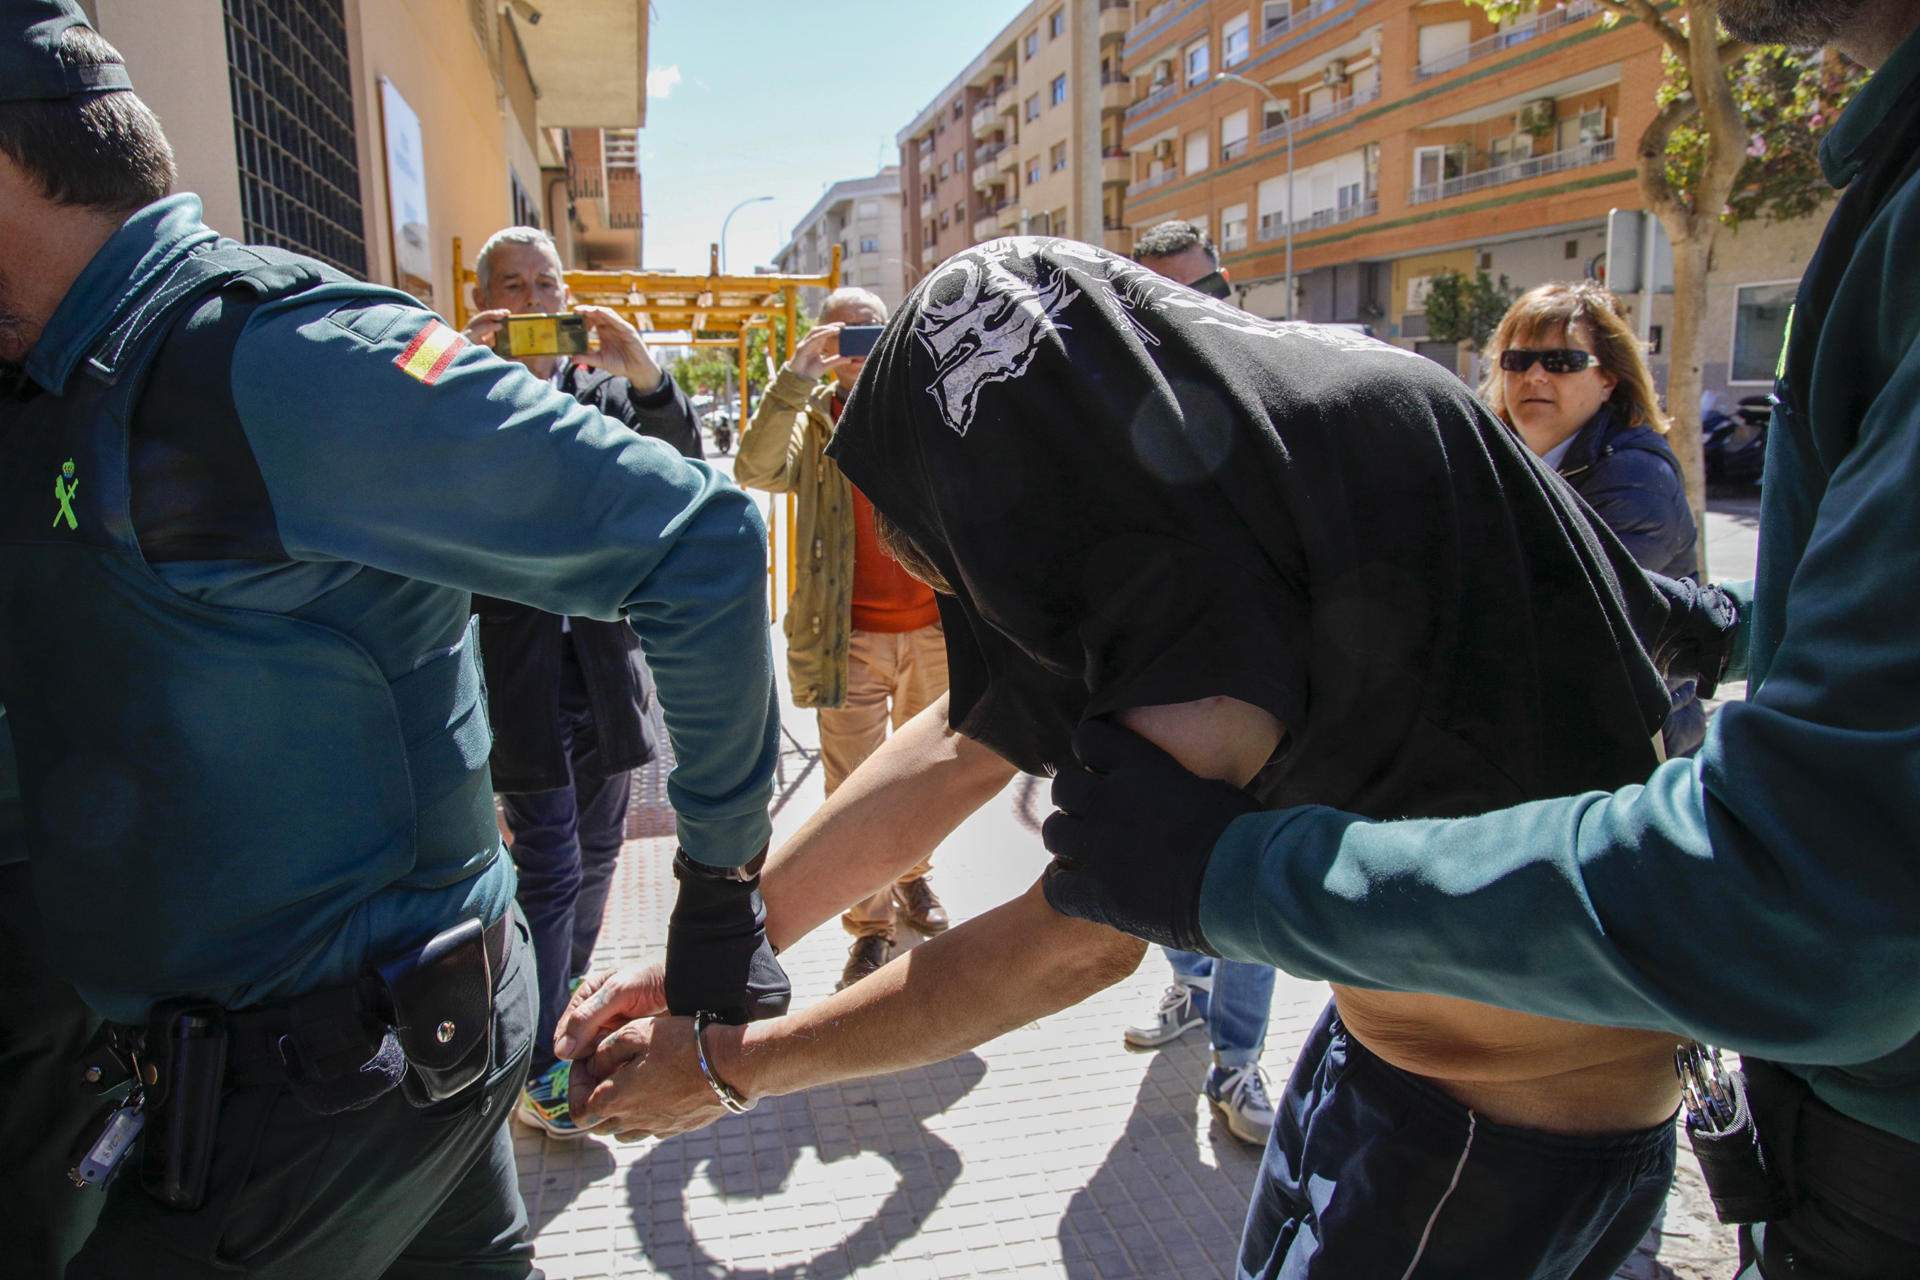 Dos maestras asesinadas esta semana: una en València por drogadictos y la otra en Badajoz por su hijo